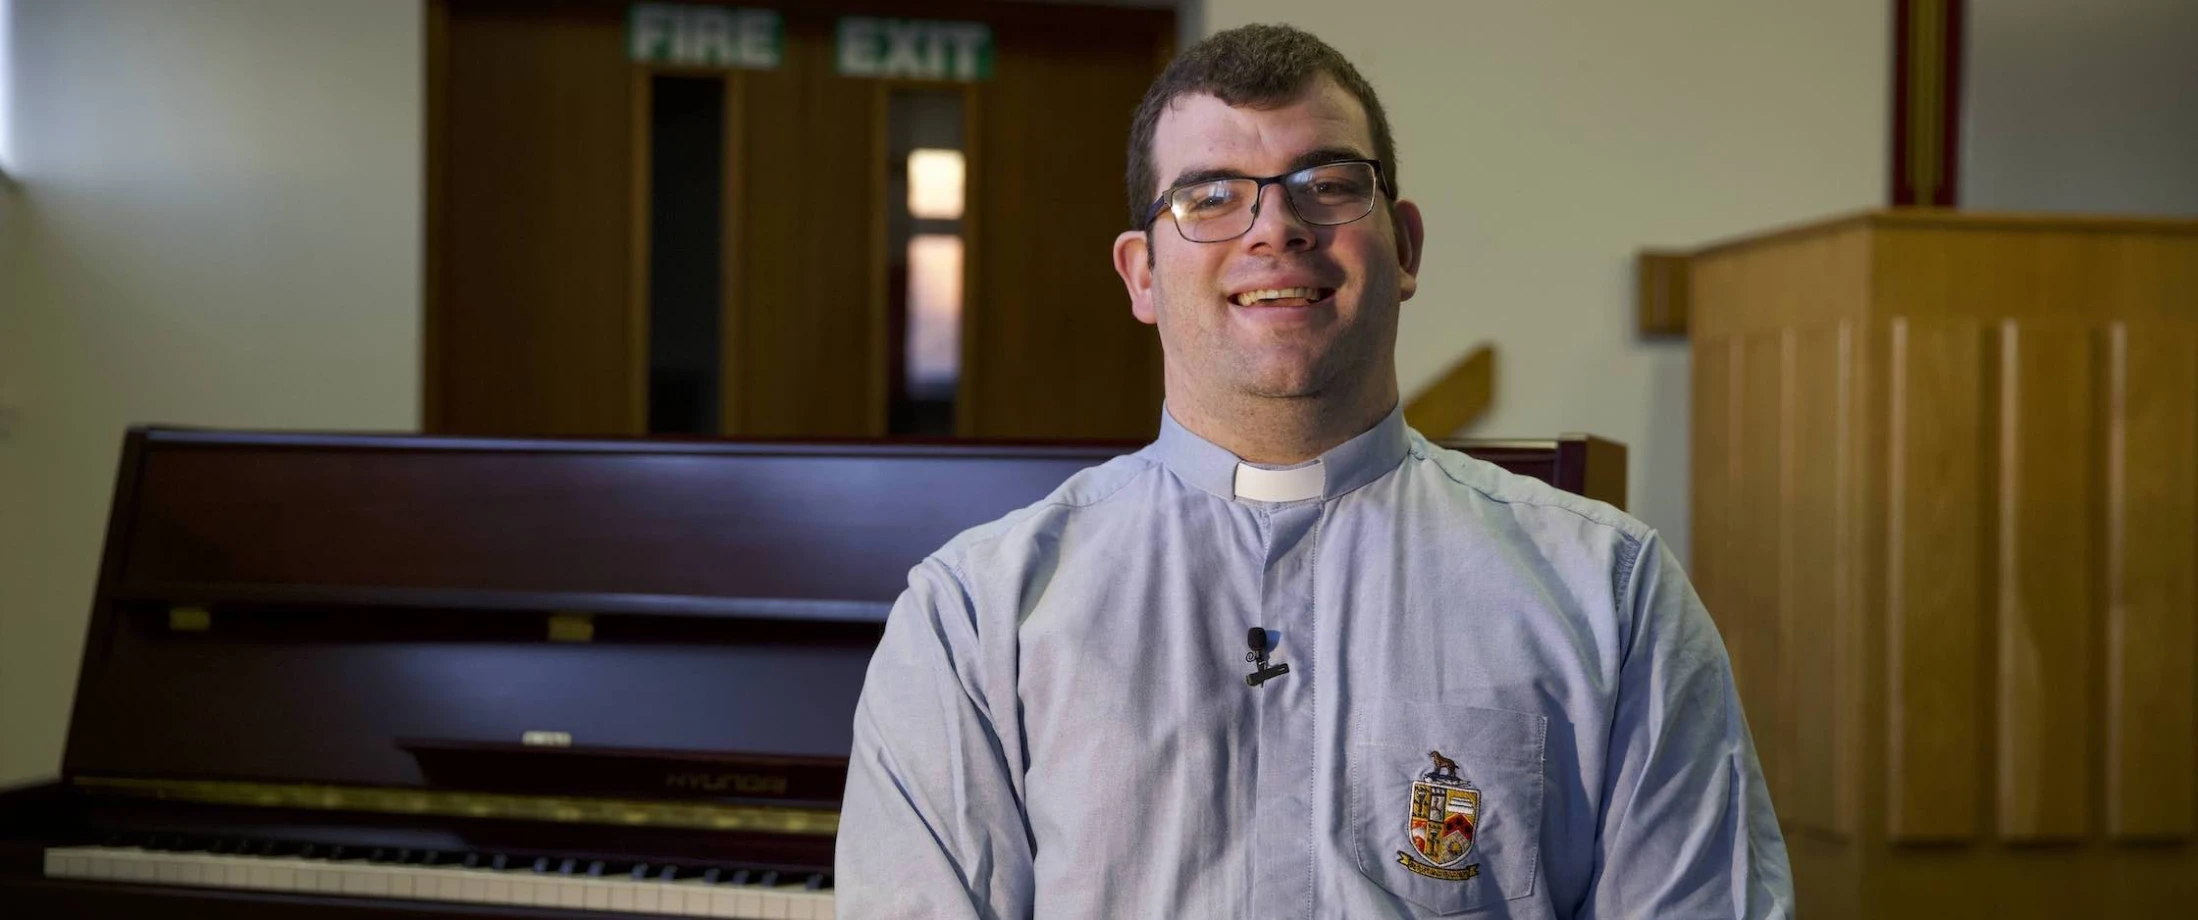 Revd Rodney Blair is ordained presbyter